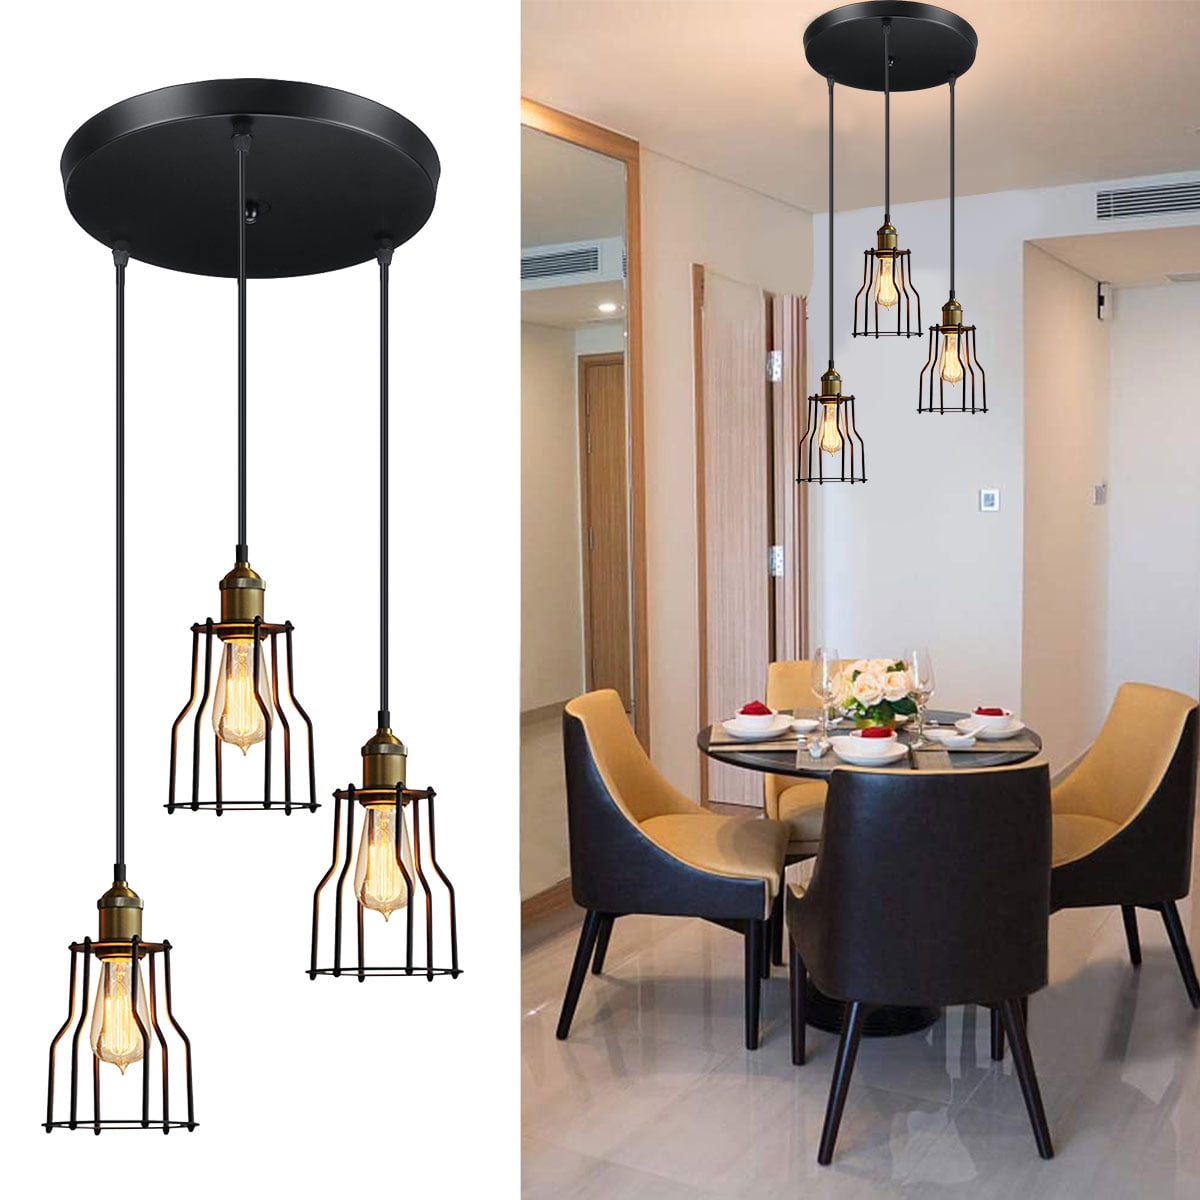 Rustic Metal Pendant Light Retro Adjustable Ceiling Lamp Chandeliers 5 Fixtures 